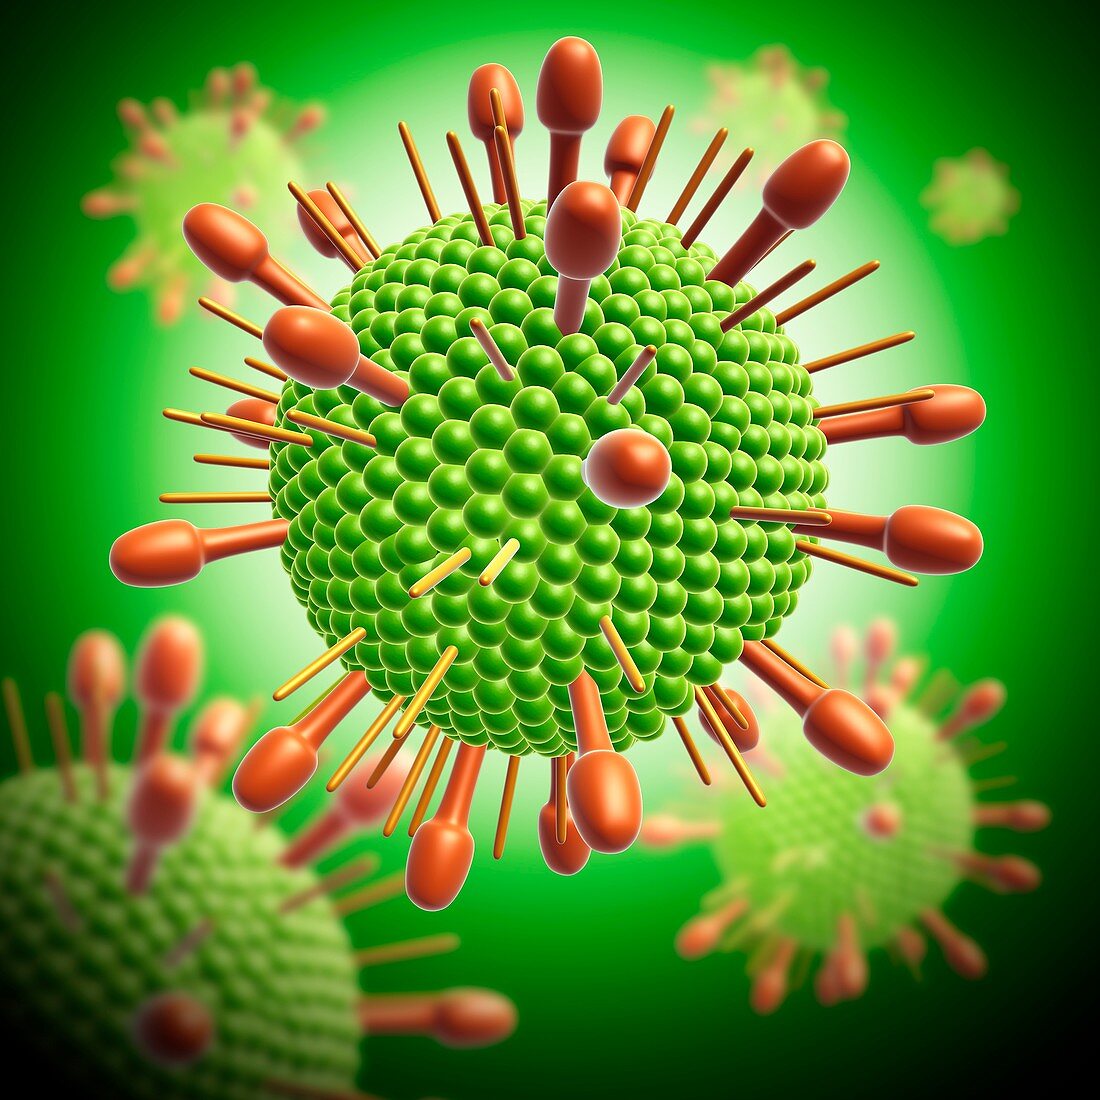 Paramyxovirus virus particle, illustration